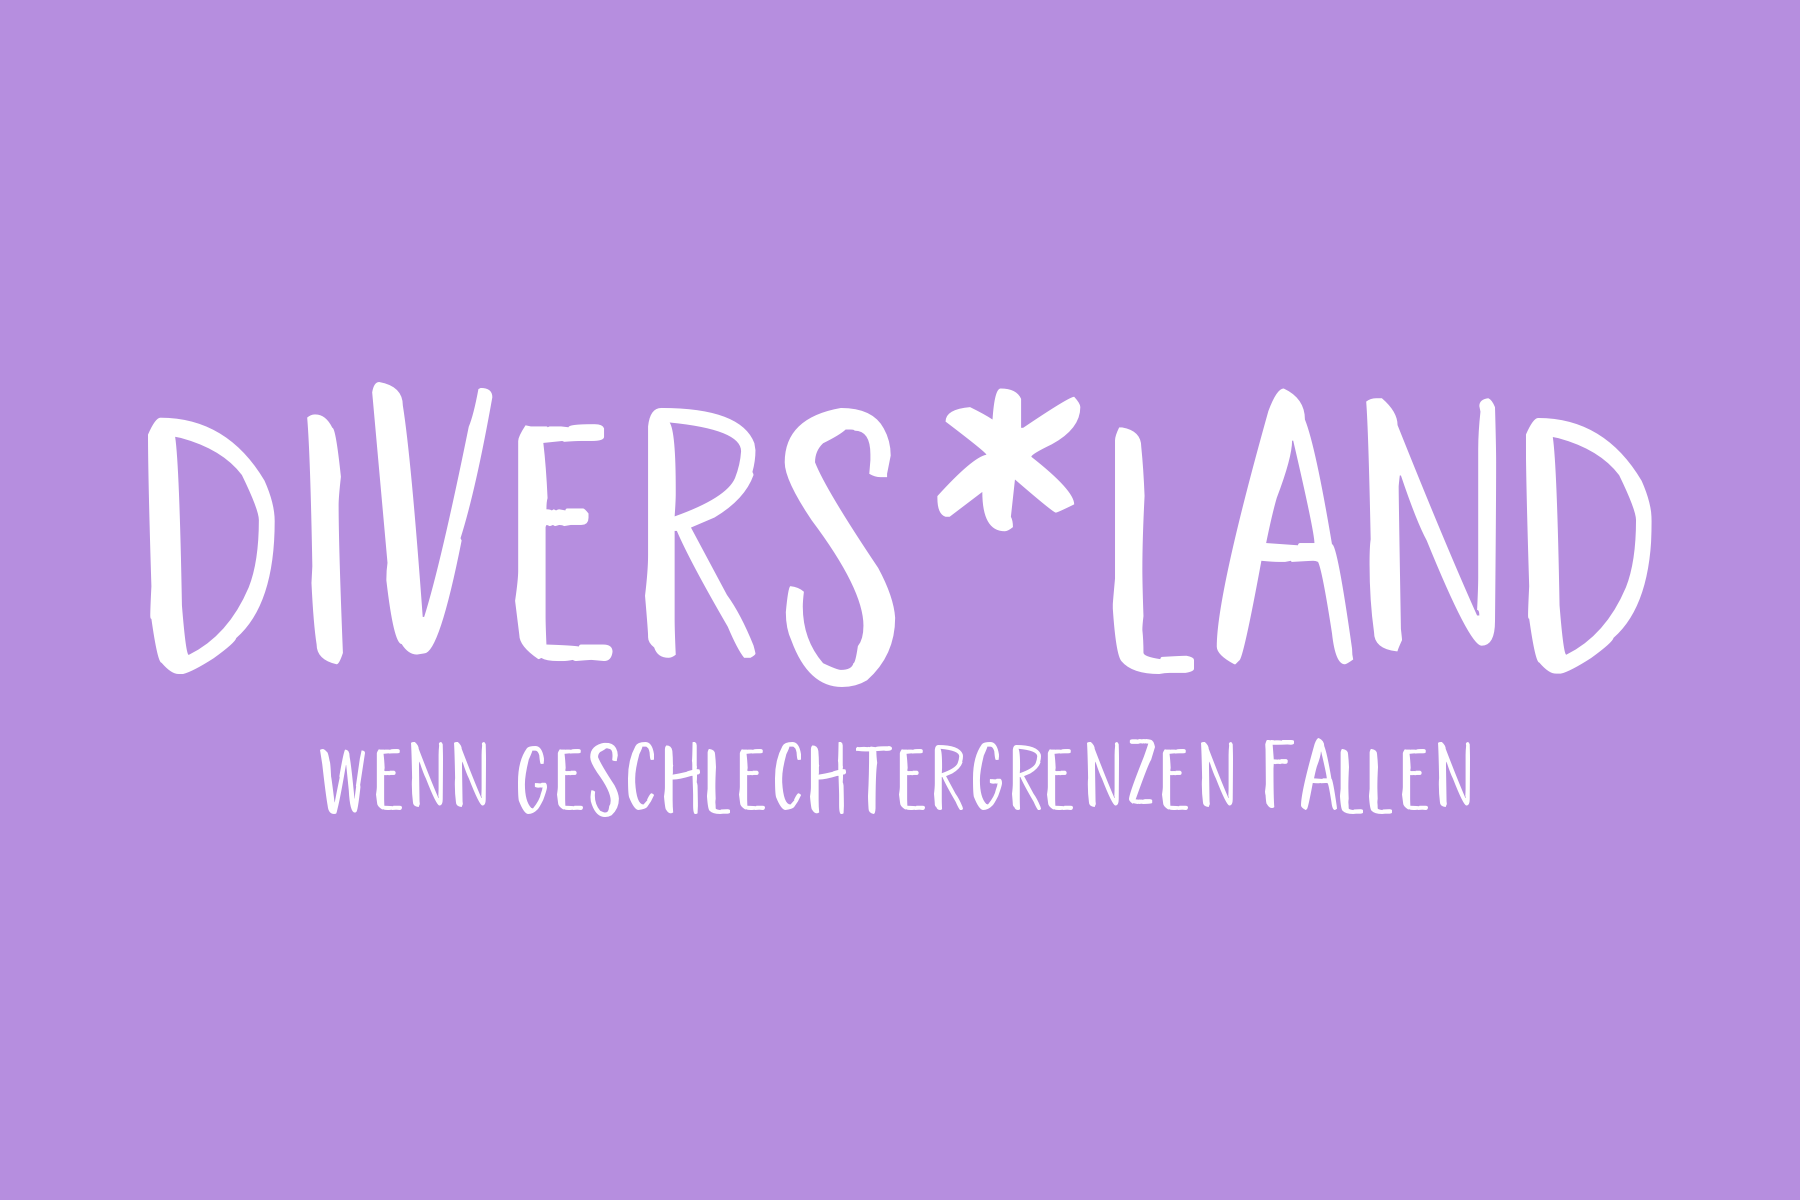 (c) Divers.land